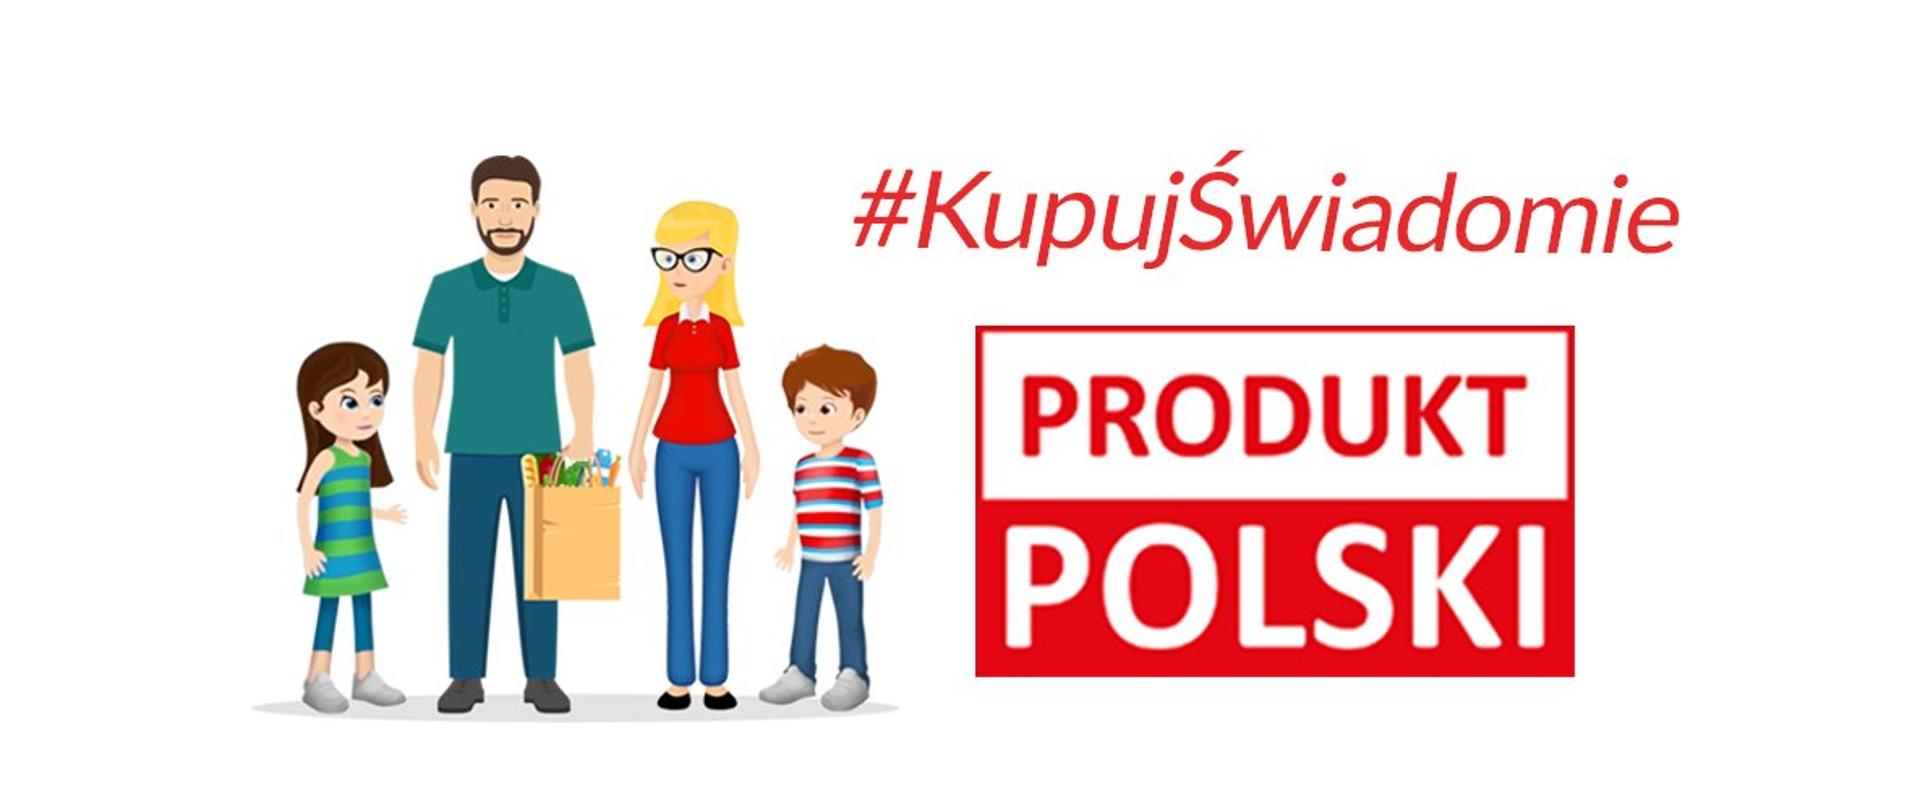 Kupowanie żywności ze znakiem PRODUKT POLSKI służy polskiemu rolnictwu i polskiej gospodarce